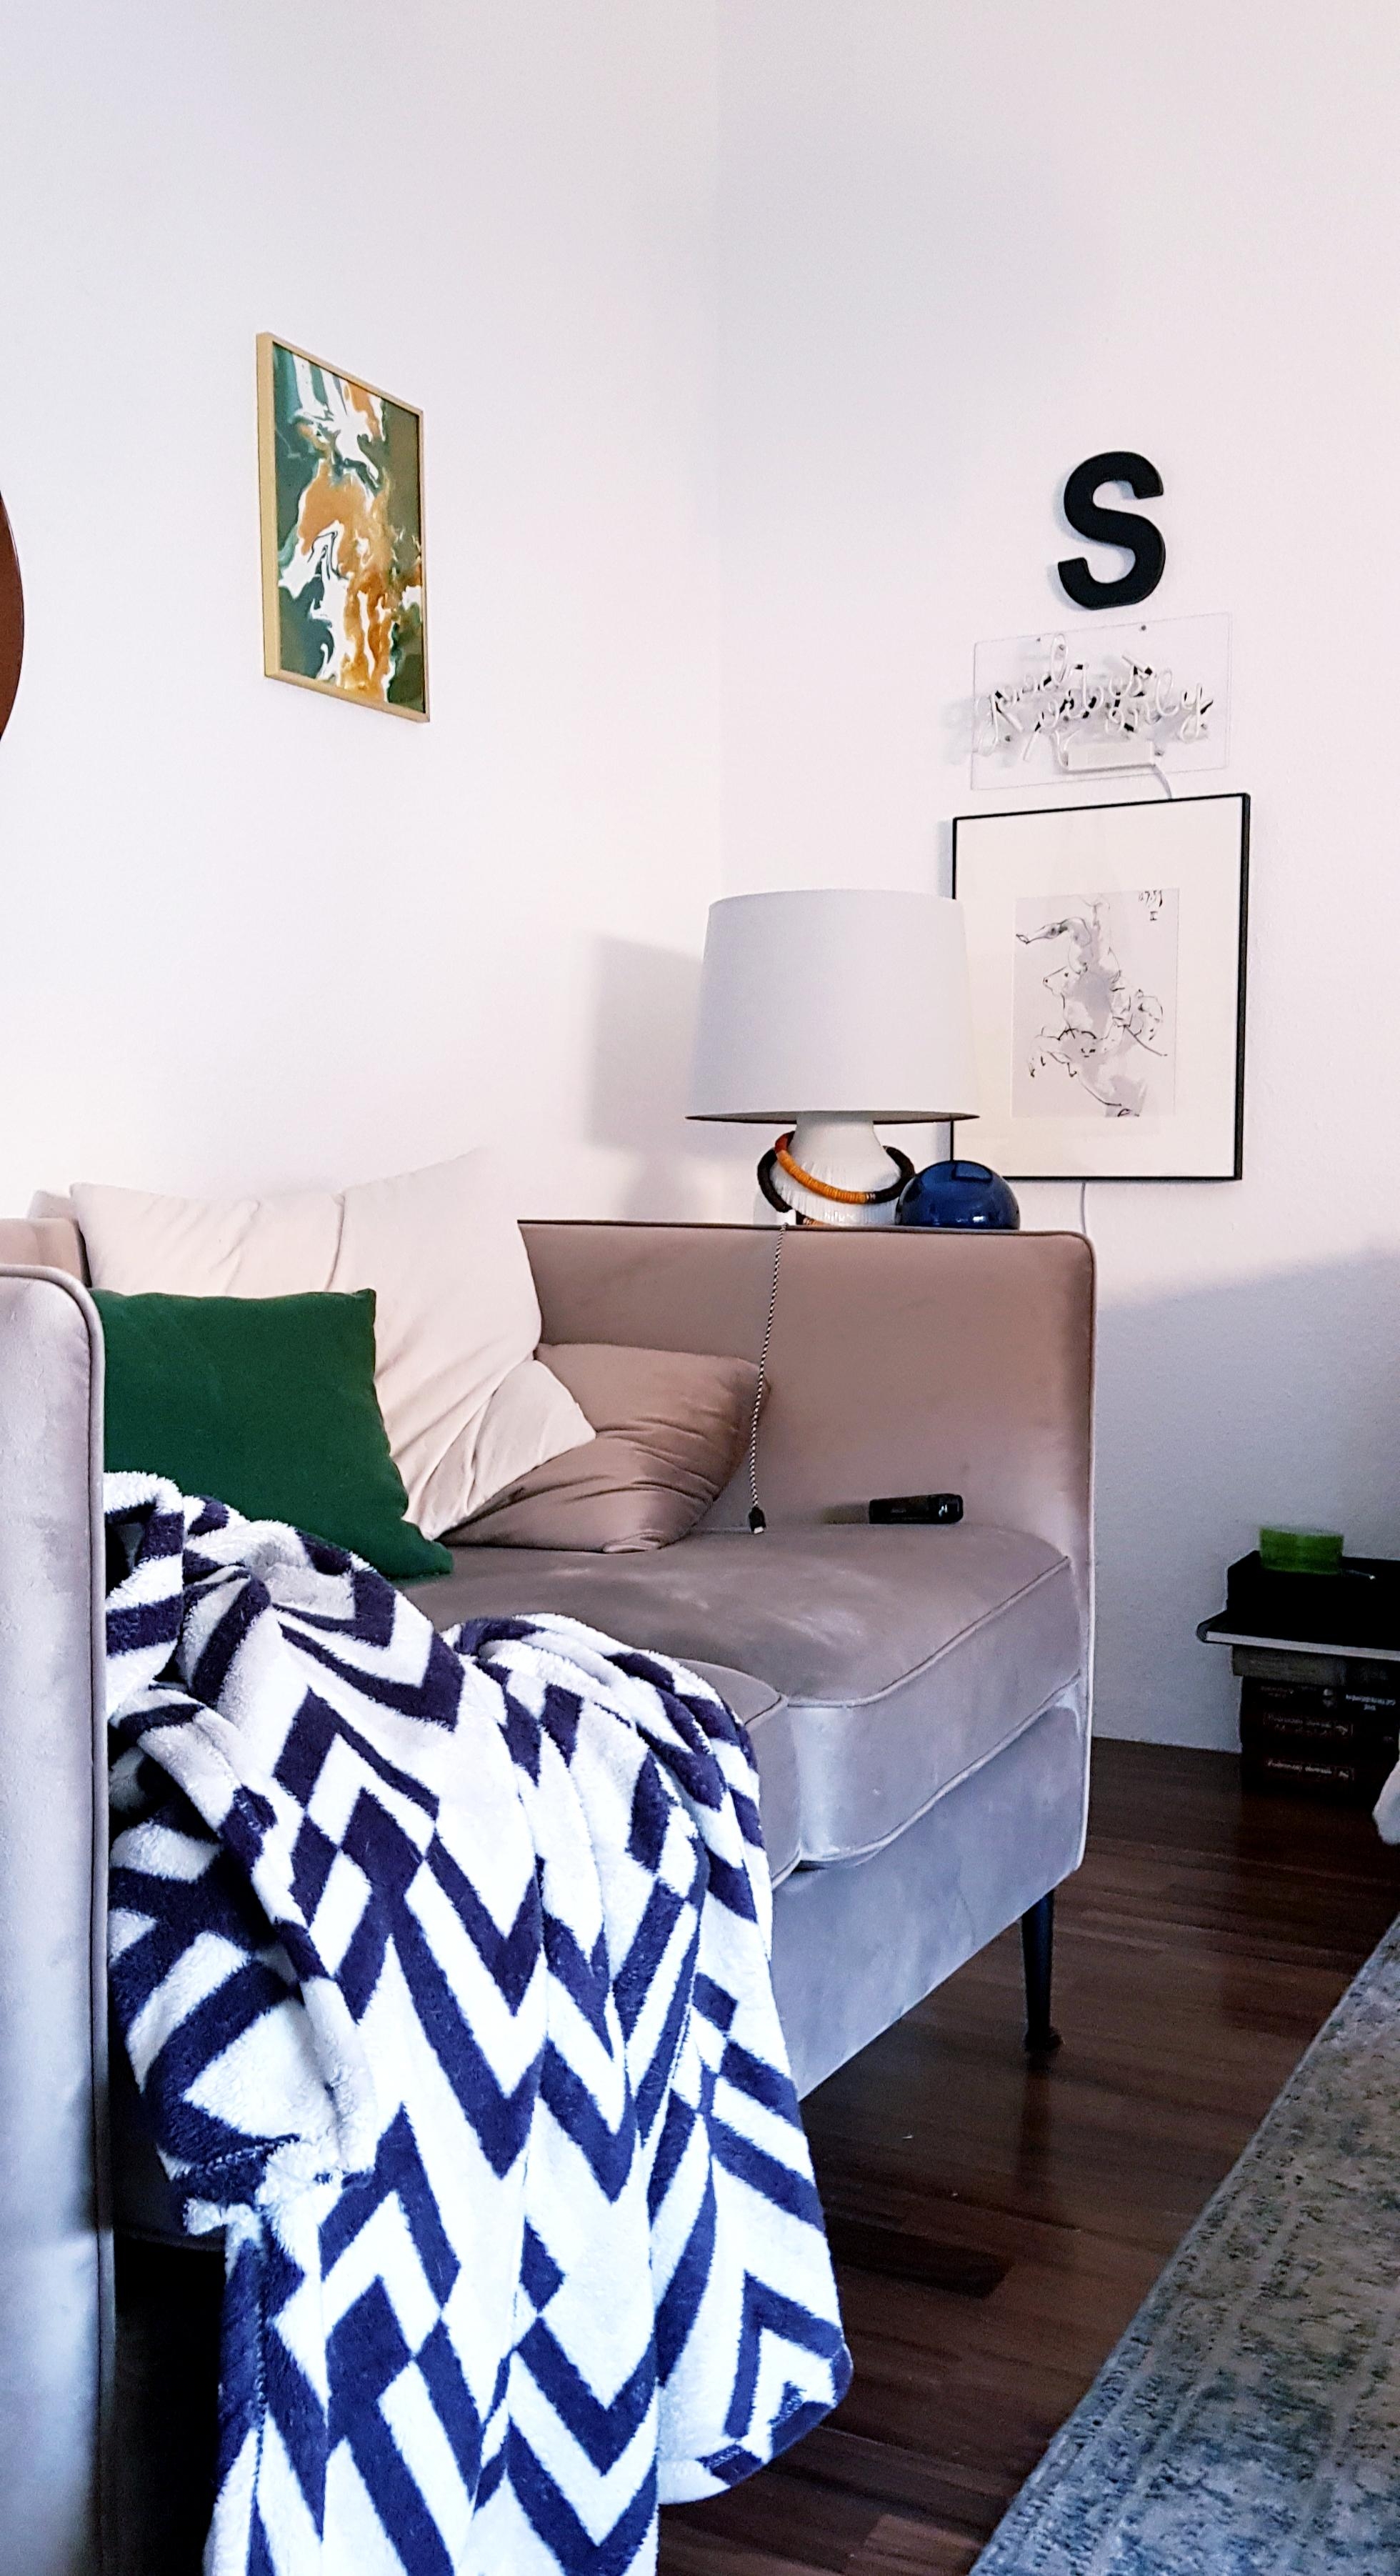 Andere Perspektive
#wohnzimmer#kleinraum#diybild#couch#sofa#lichtSchrift